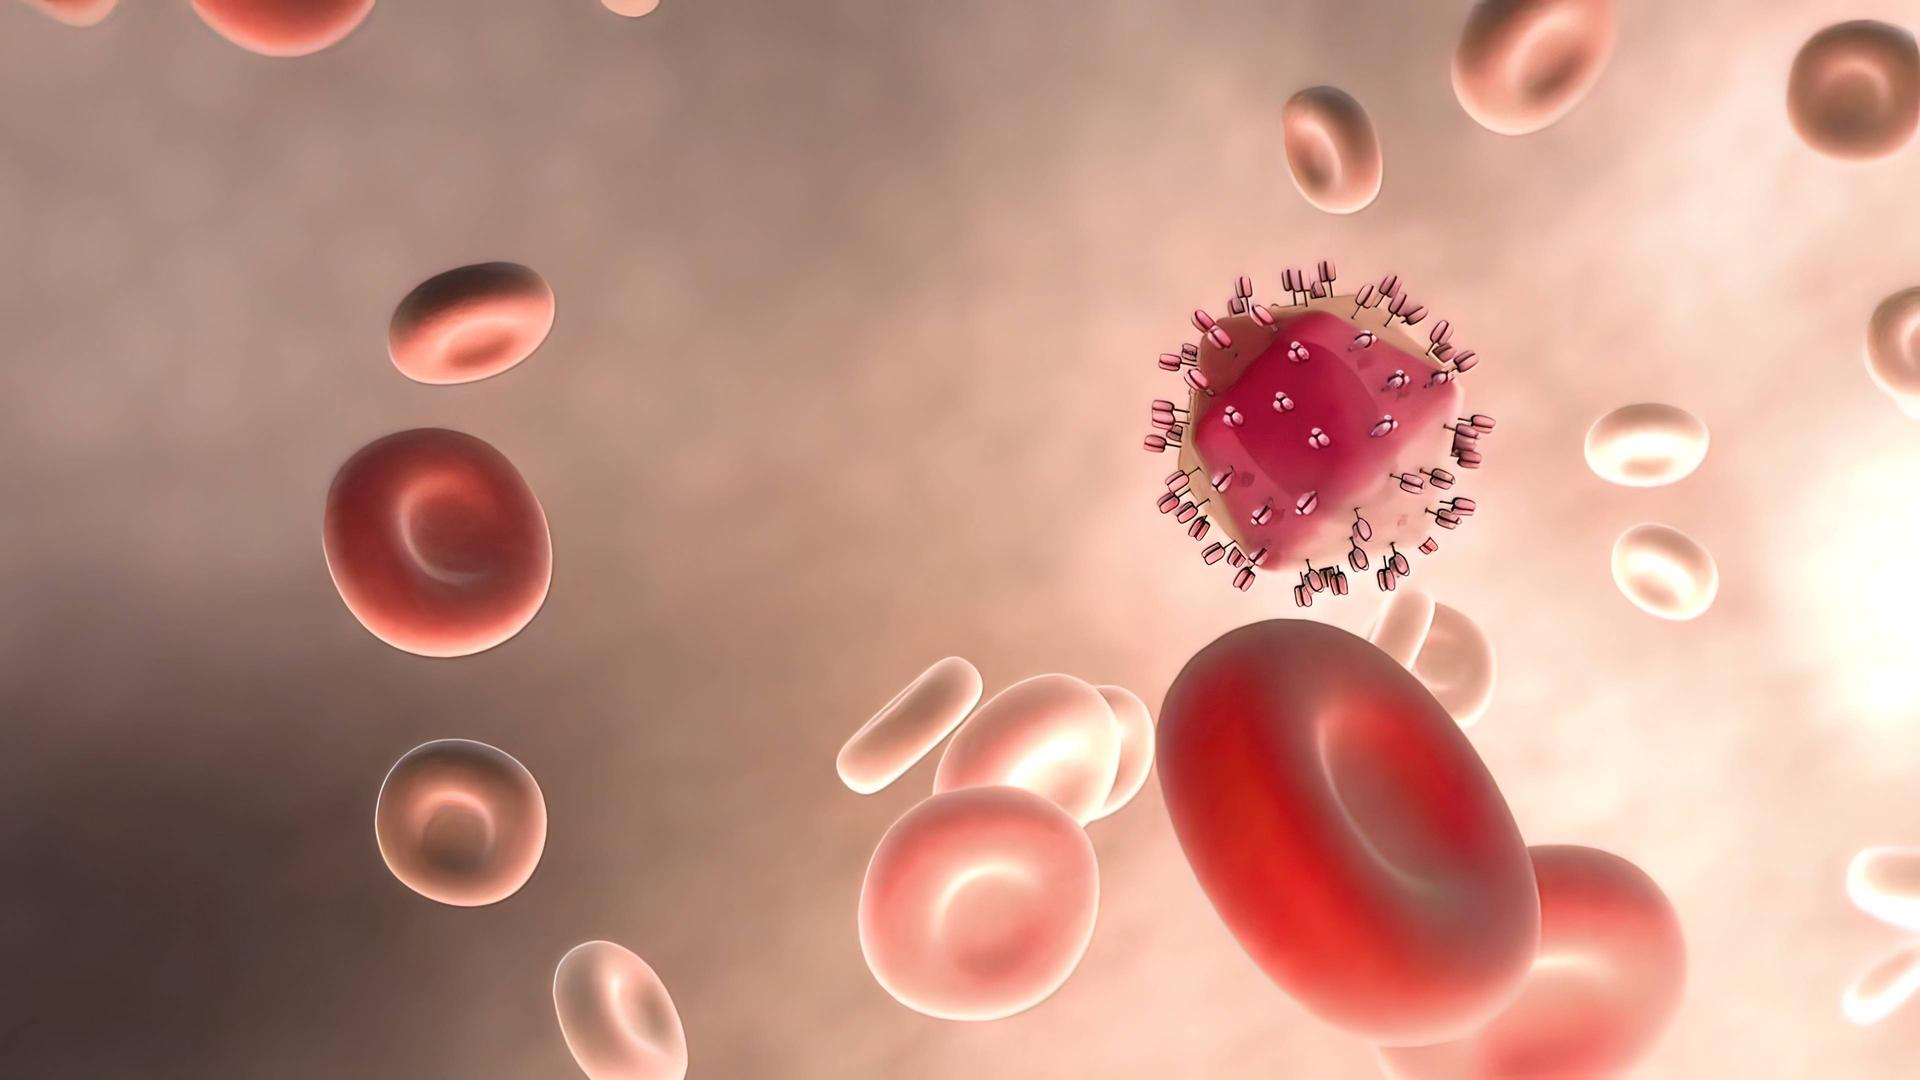 Die Reise des Hepatitis A Virus durch das Blut nachgebildet in einer Illustration mit roten Teilchen. 